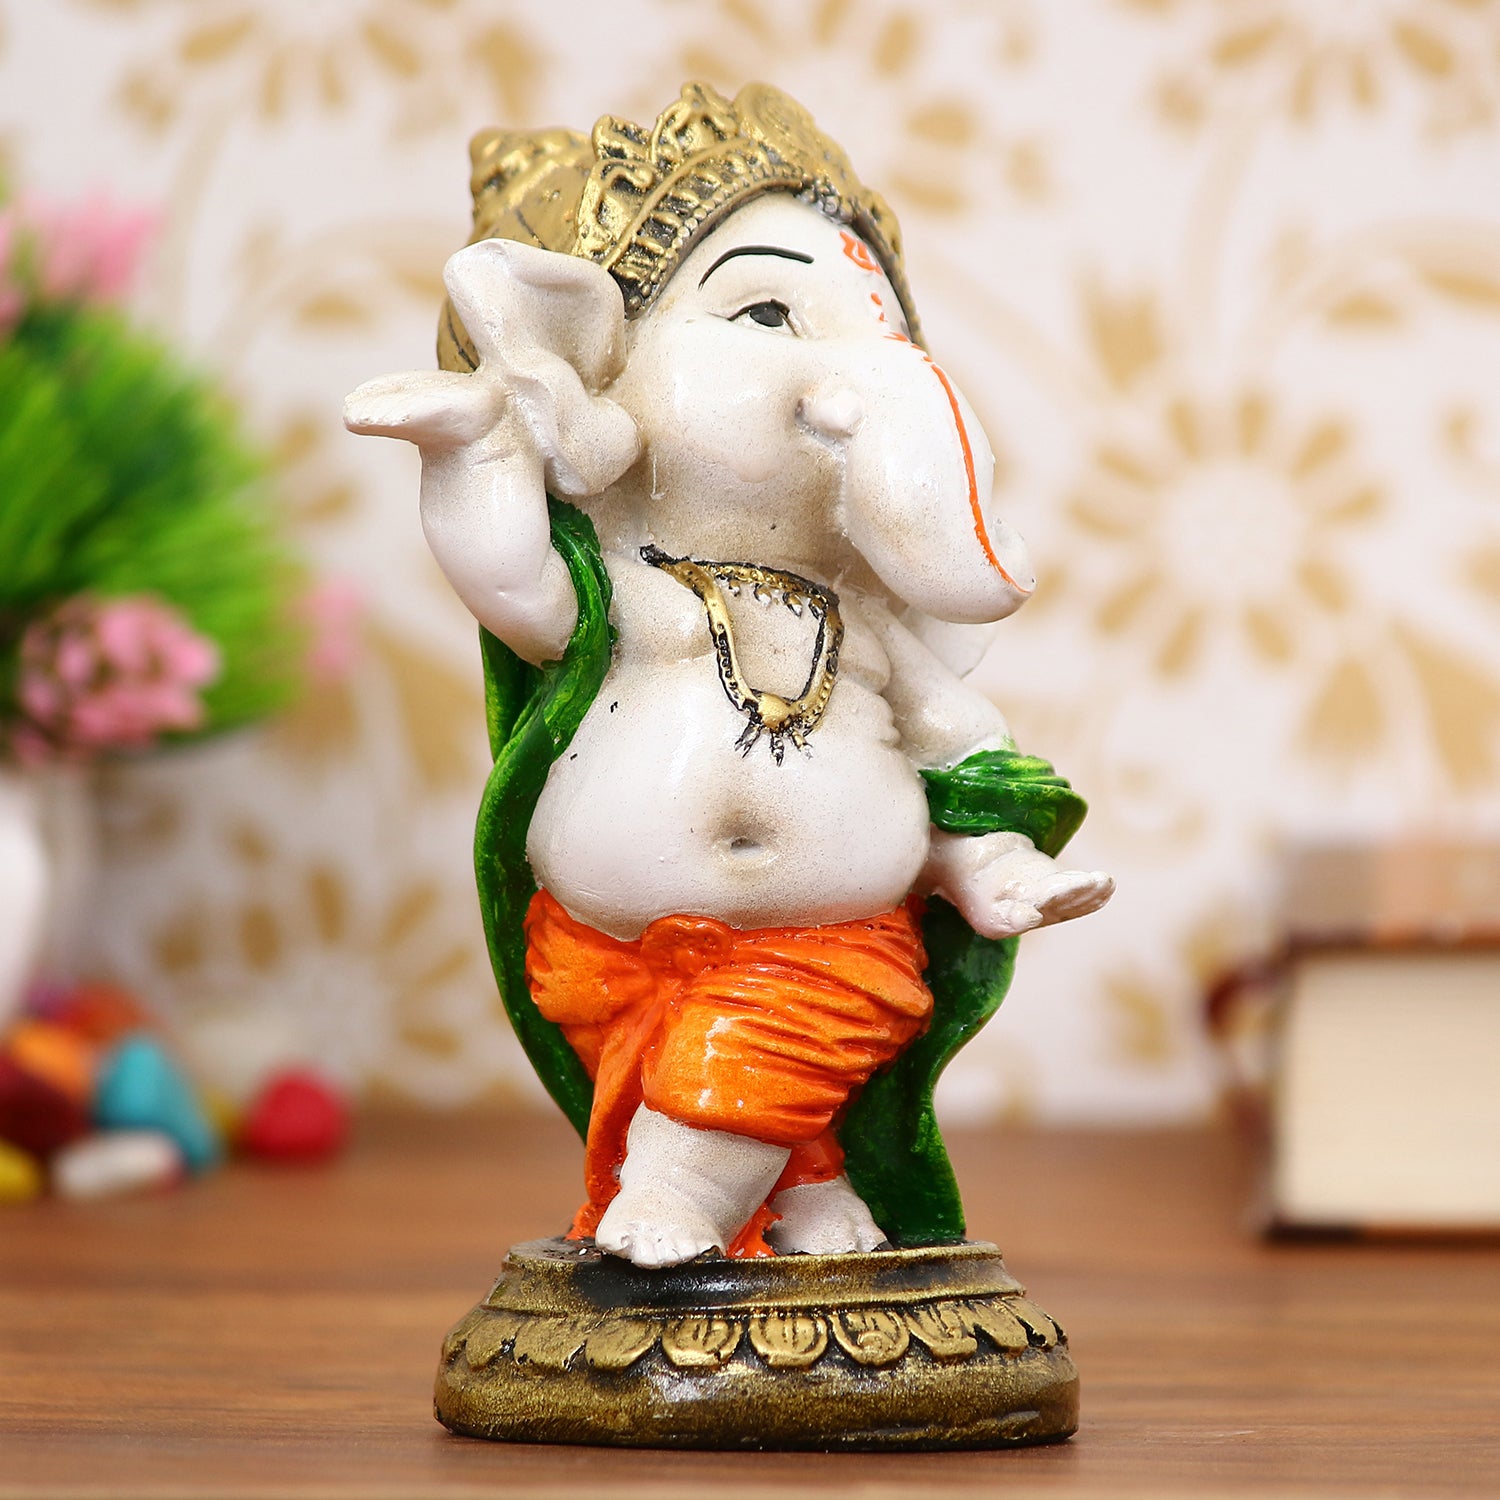 Lord Ganesha Idol In Dancing Avatar Decorative Showpiece 1